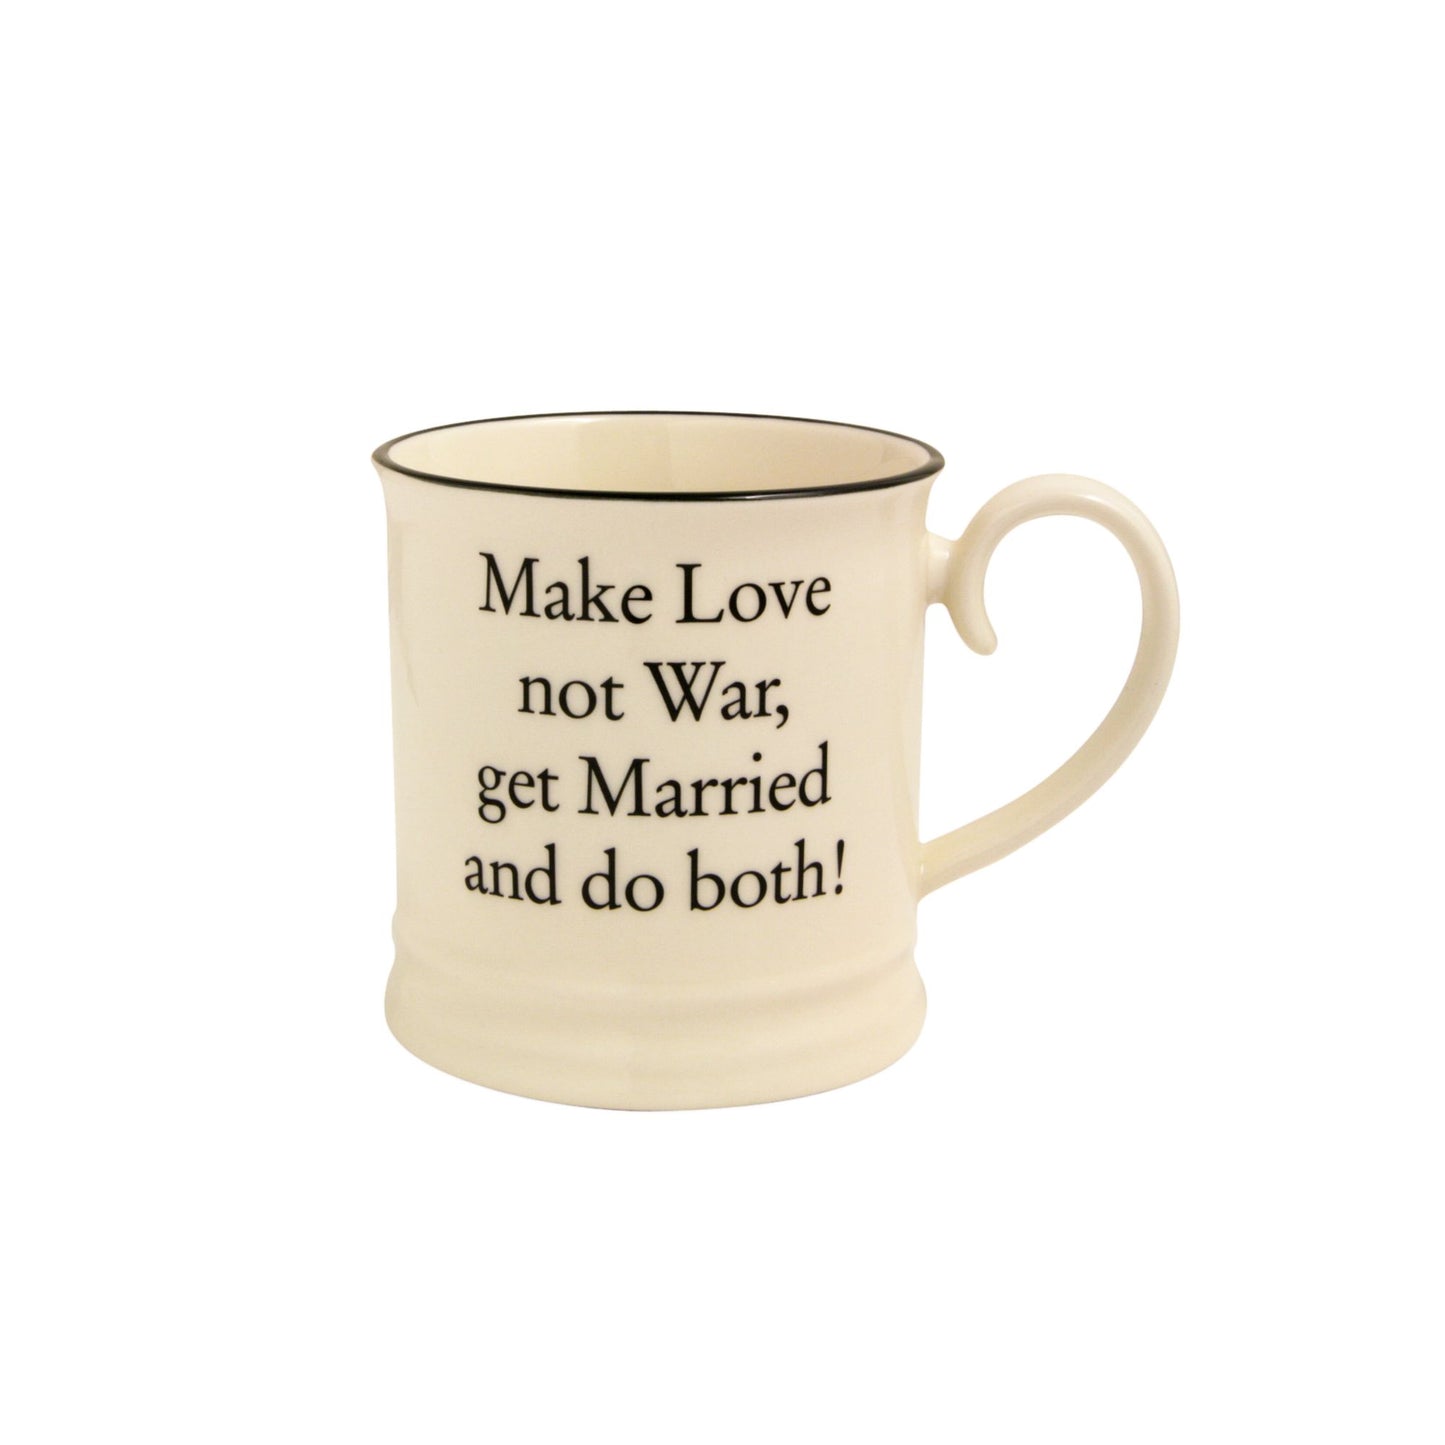 Fairmont & Main Make love not war - Tankard Mug